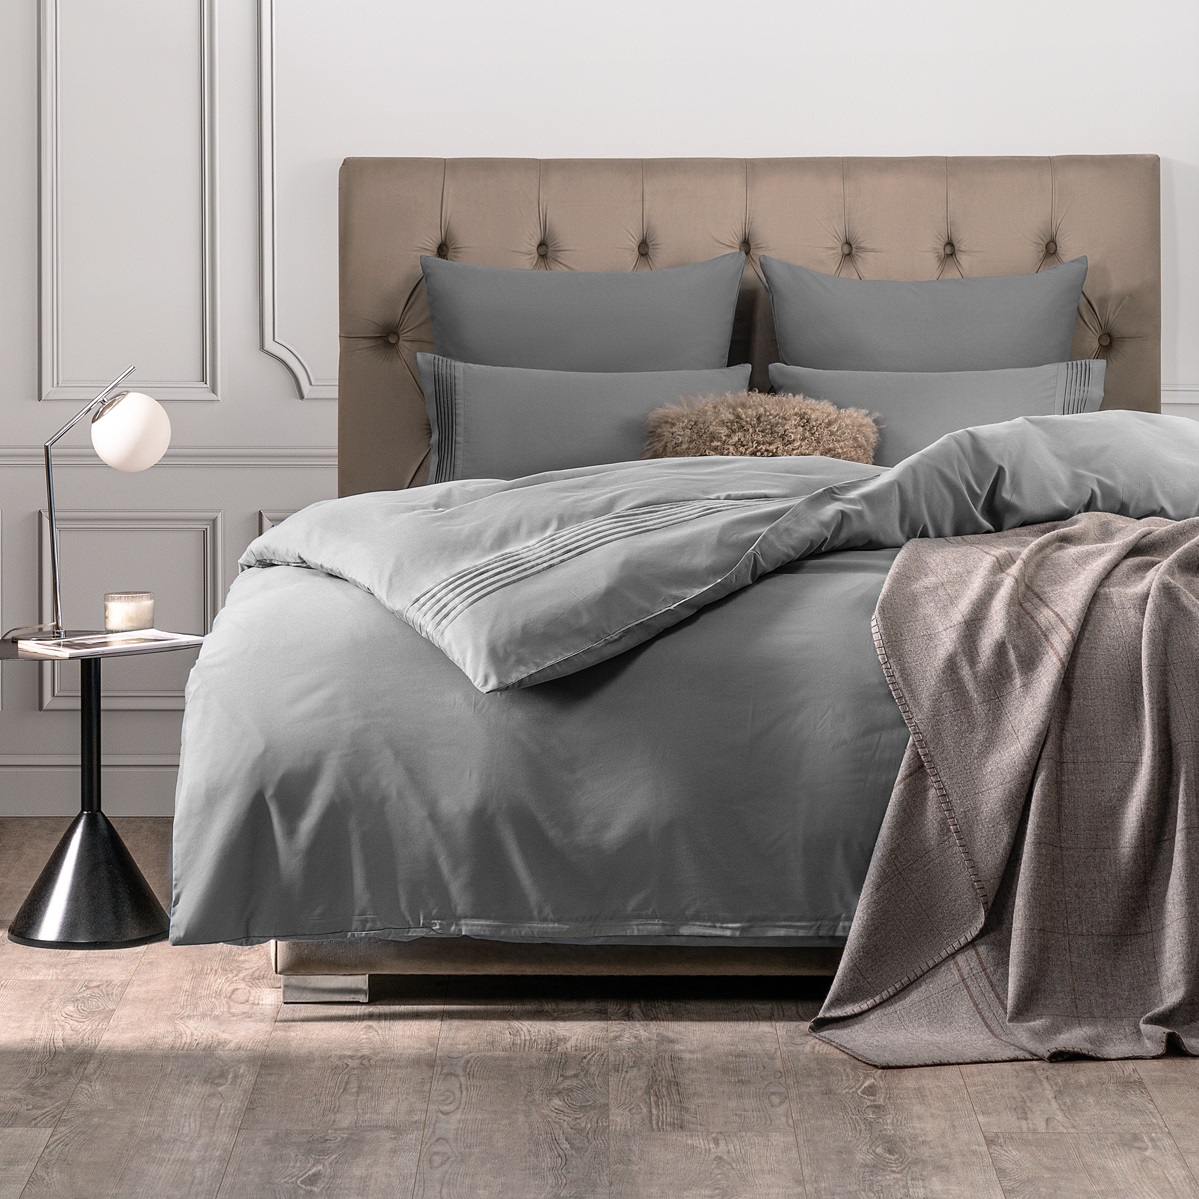 Комплект постельного белья Sleepix Миоко серый Полуторный, размер Полуторный - фото 1